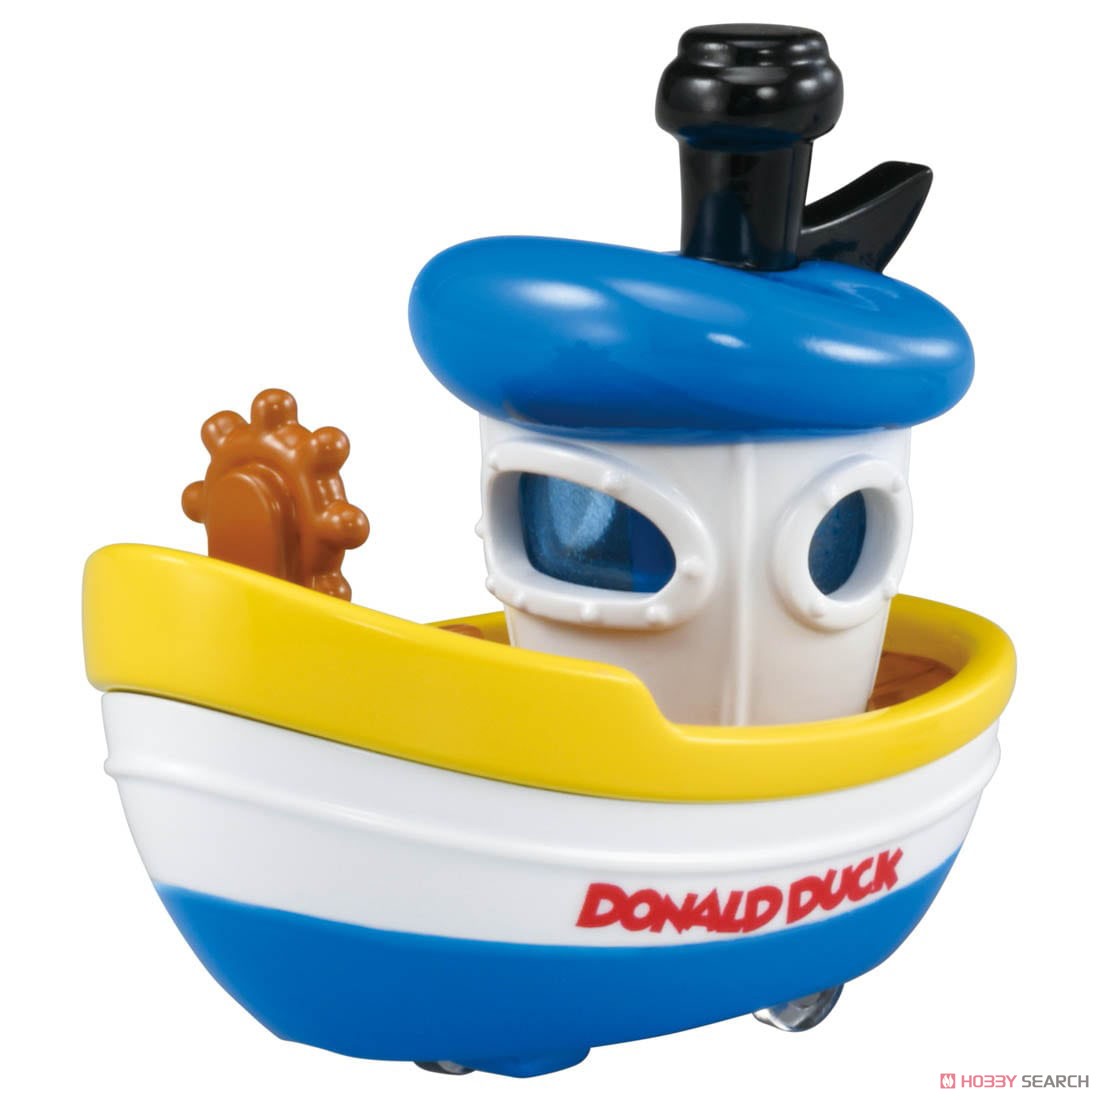 ドリームトミカ ライドオン ディズニー RD-04 ドナルドダック&スチームボート (トミカ) 商品画像4